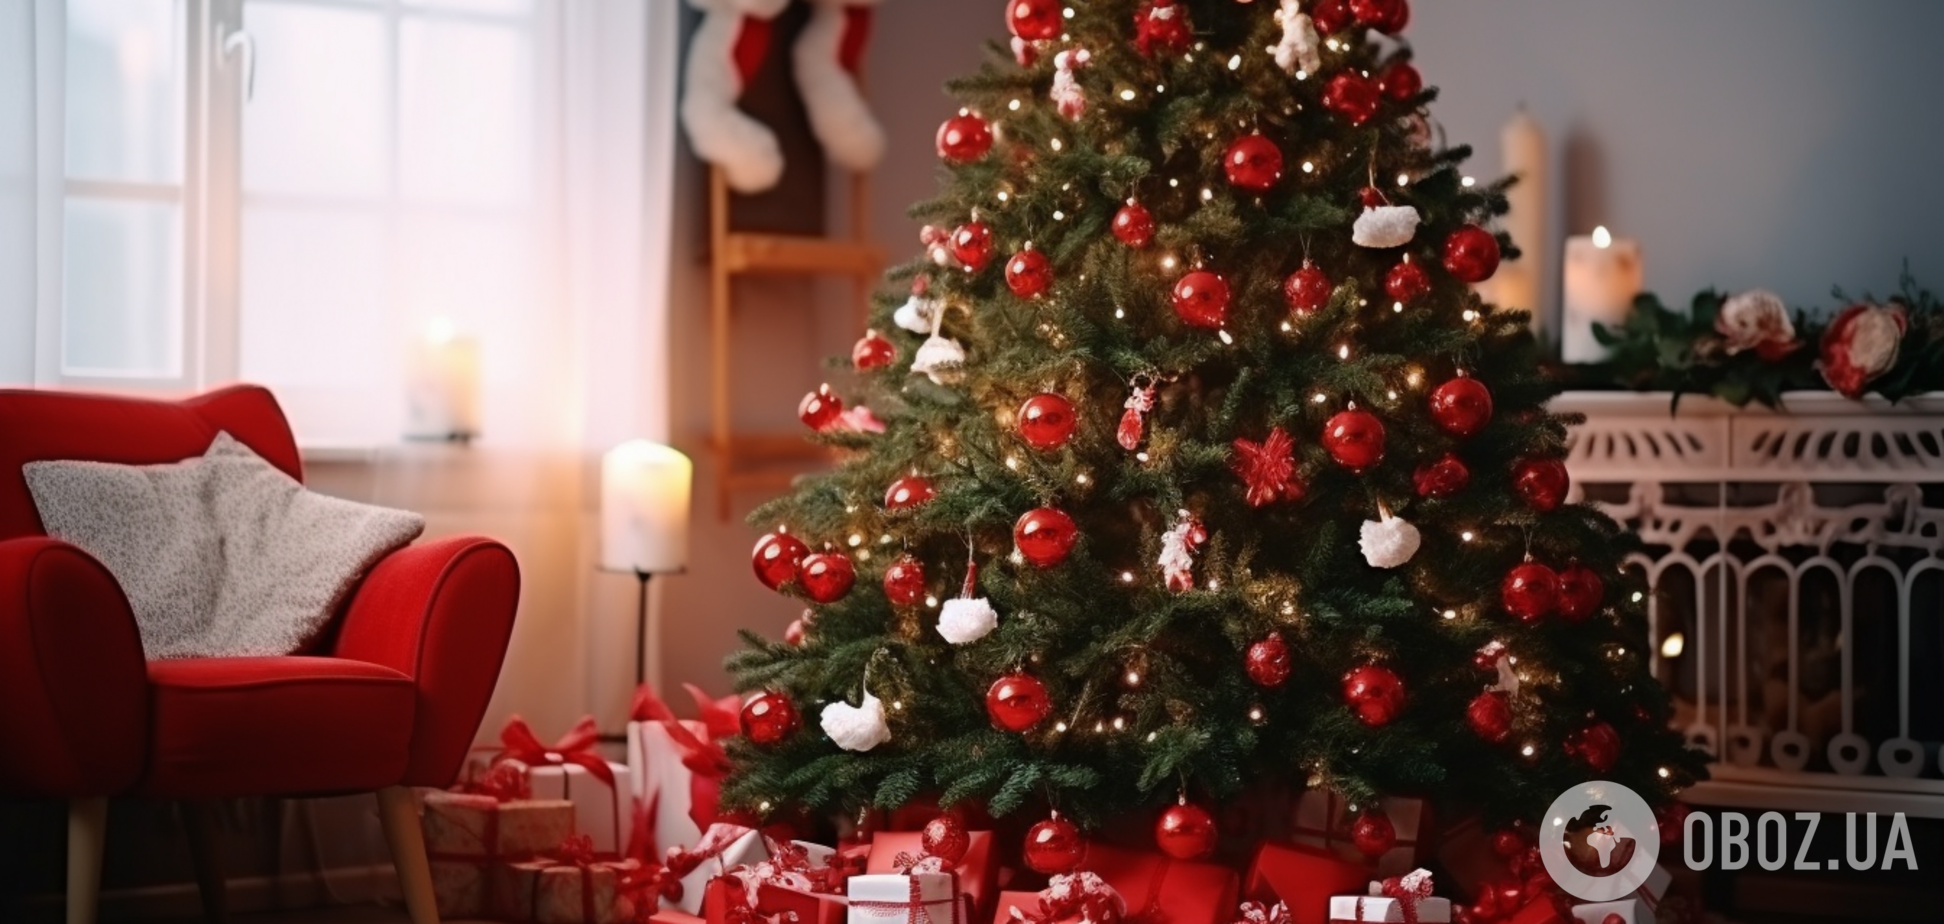 Хто заховався між Санта Клаусами: весела новорічна головоломка